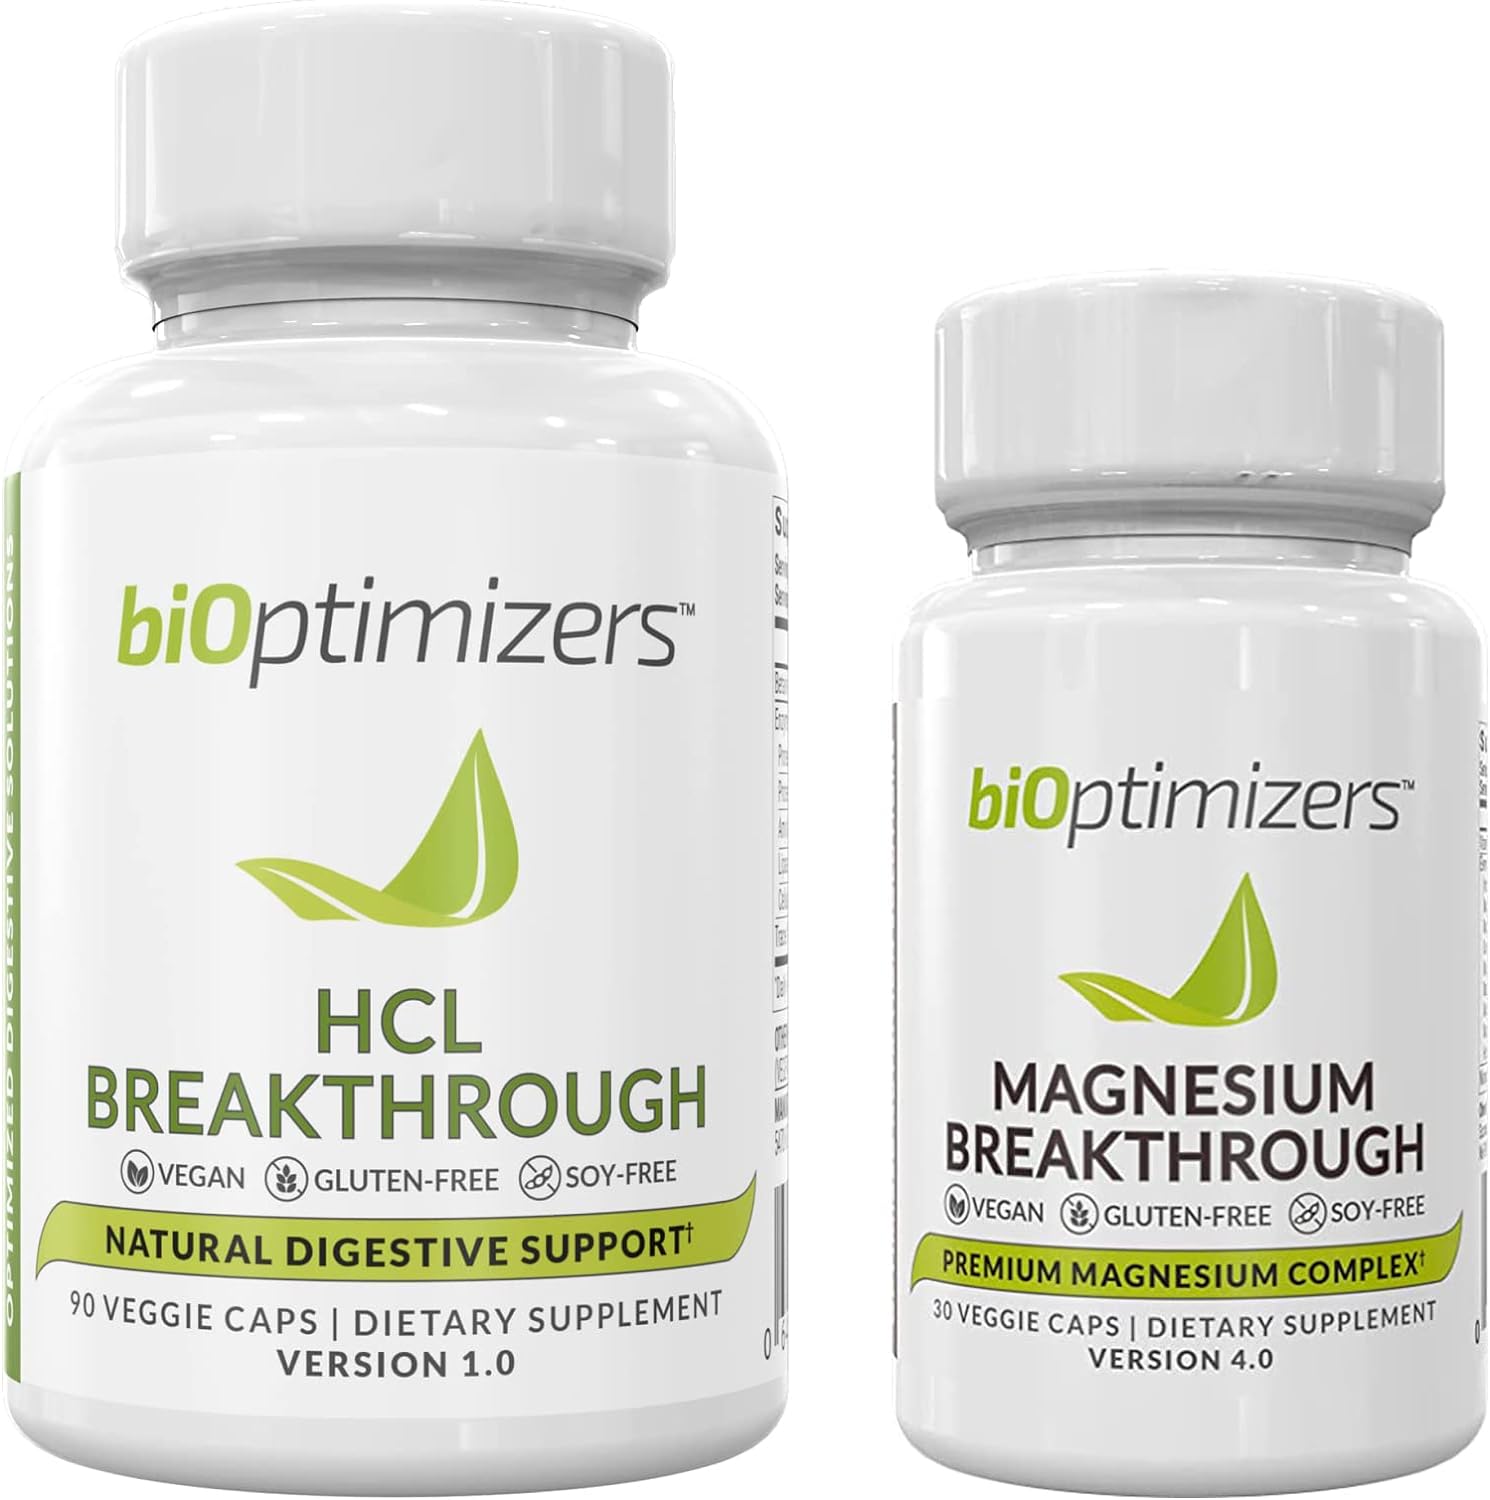 BiOptimizers - Magnesium Breakthrough (60 Capsules) and HCL Breakthrough (90 Capsules) Supplement Bundle